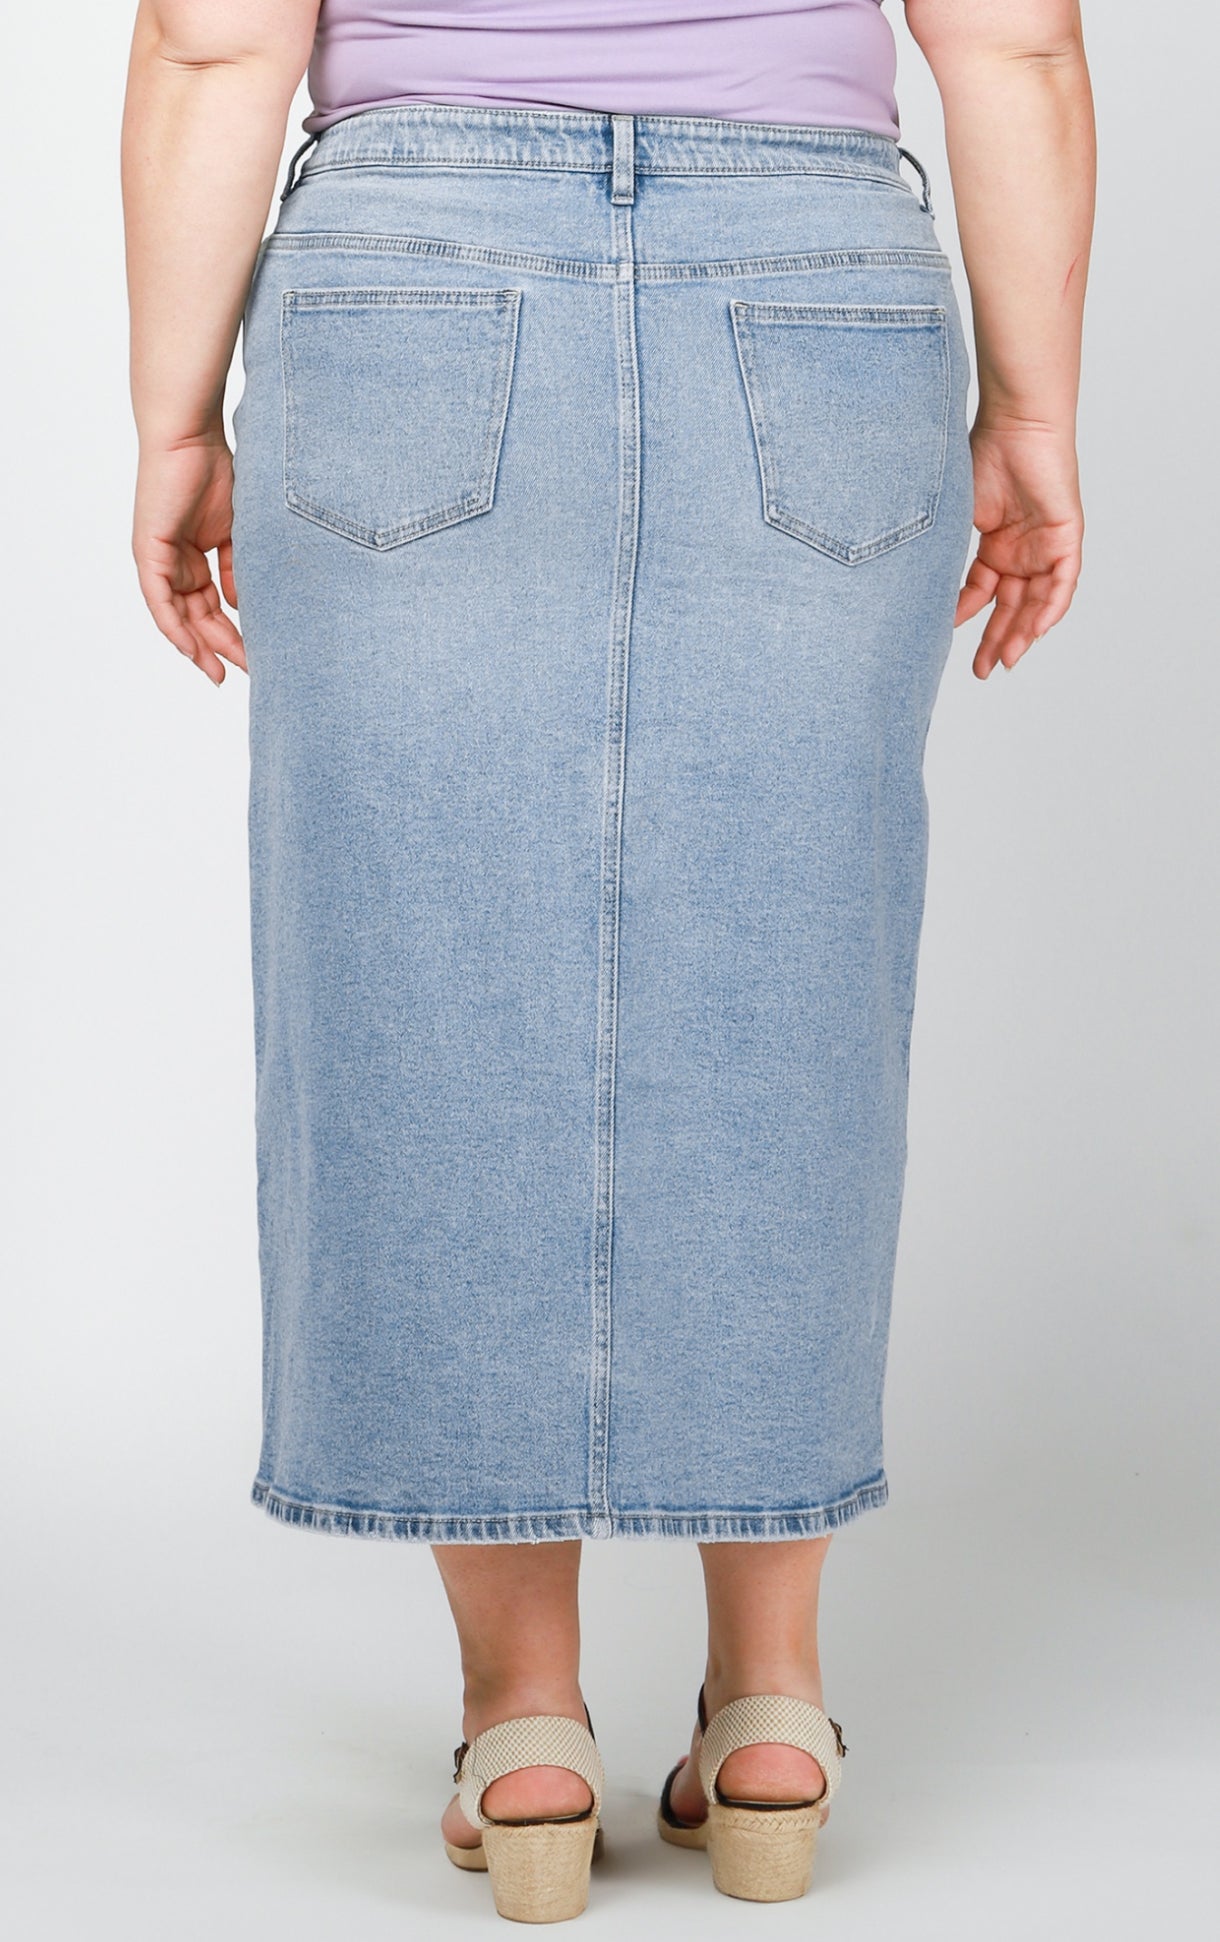 Plus size denim skirt by Dex - Blue Sky Fashions & Lingerie